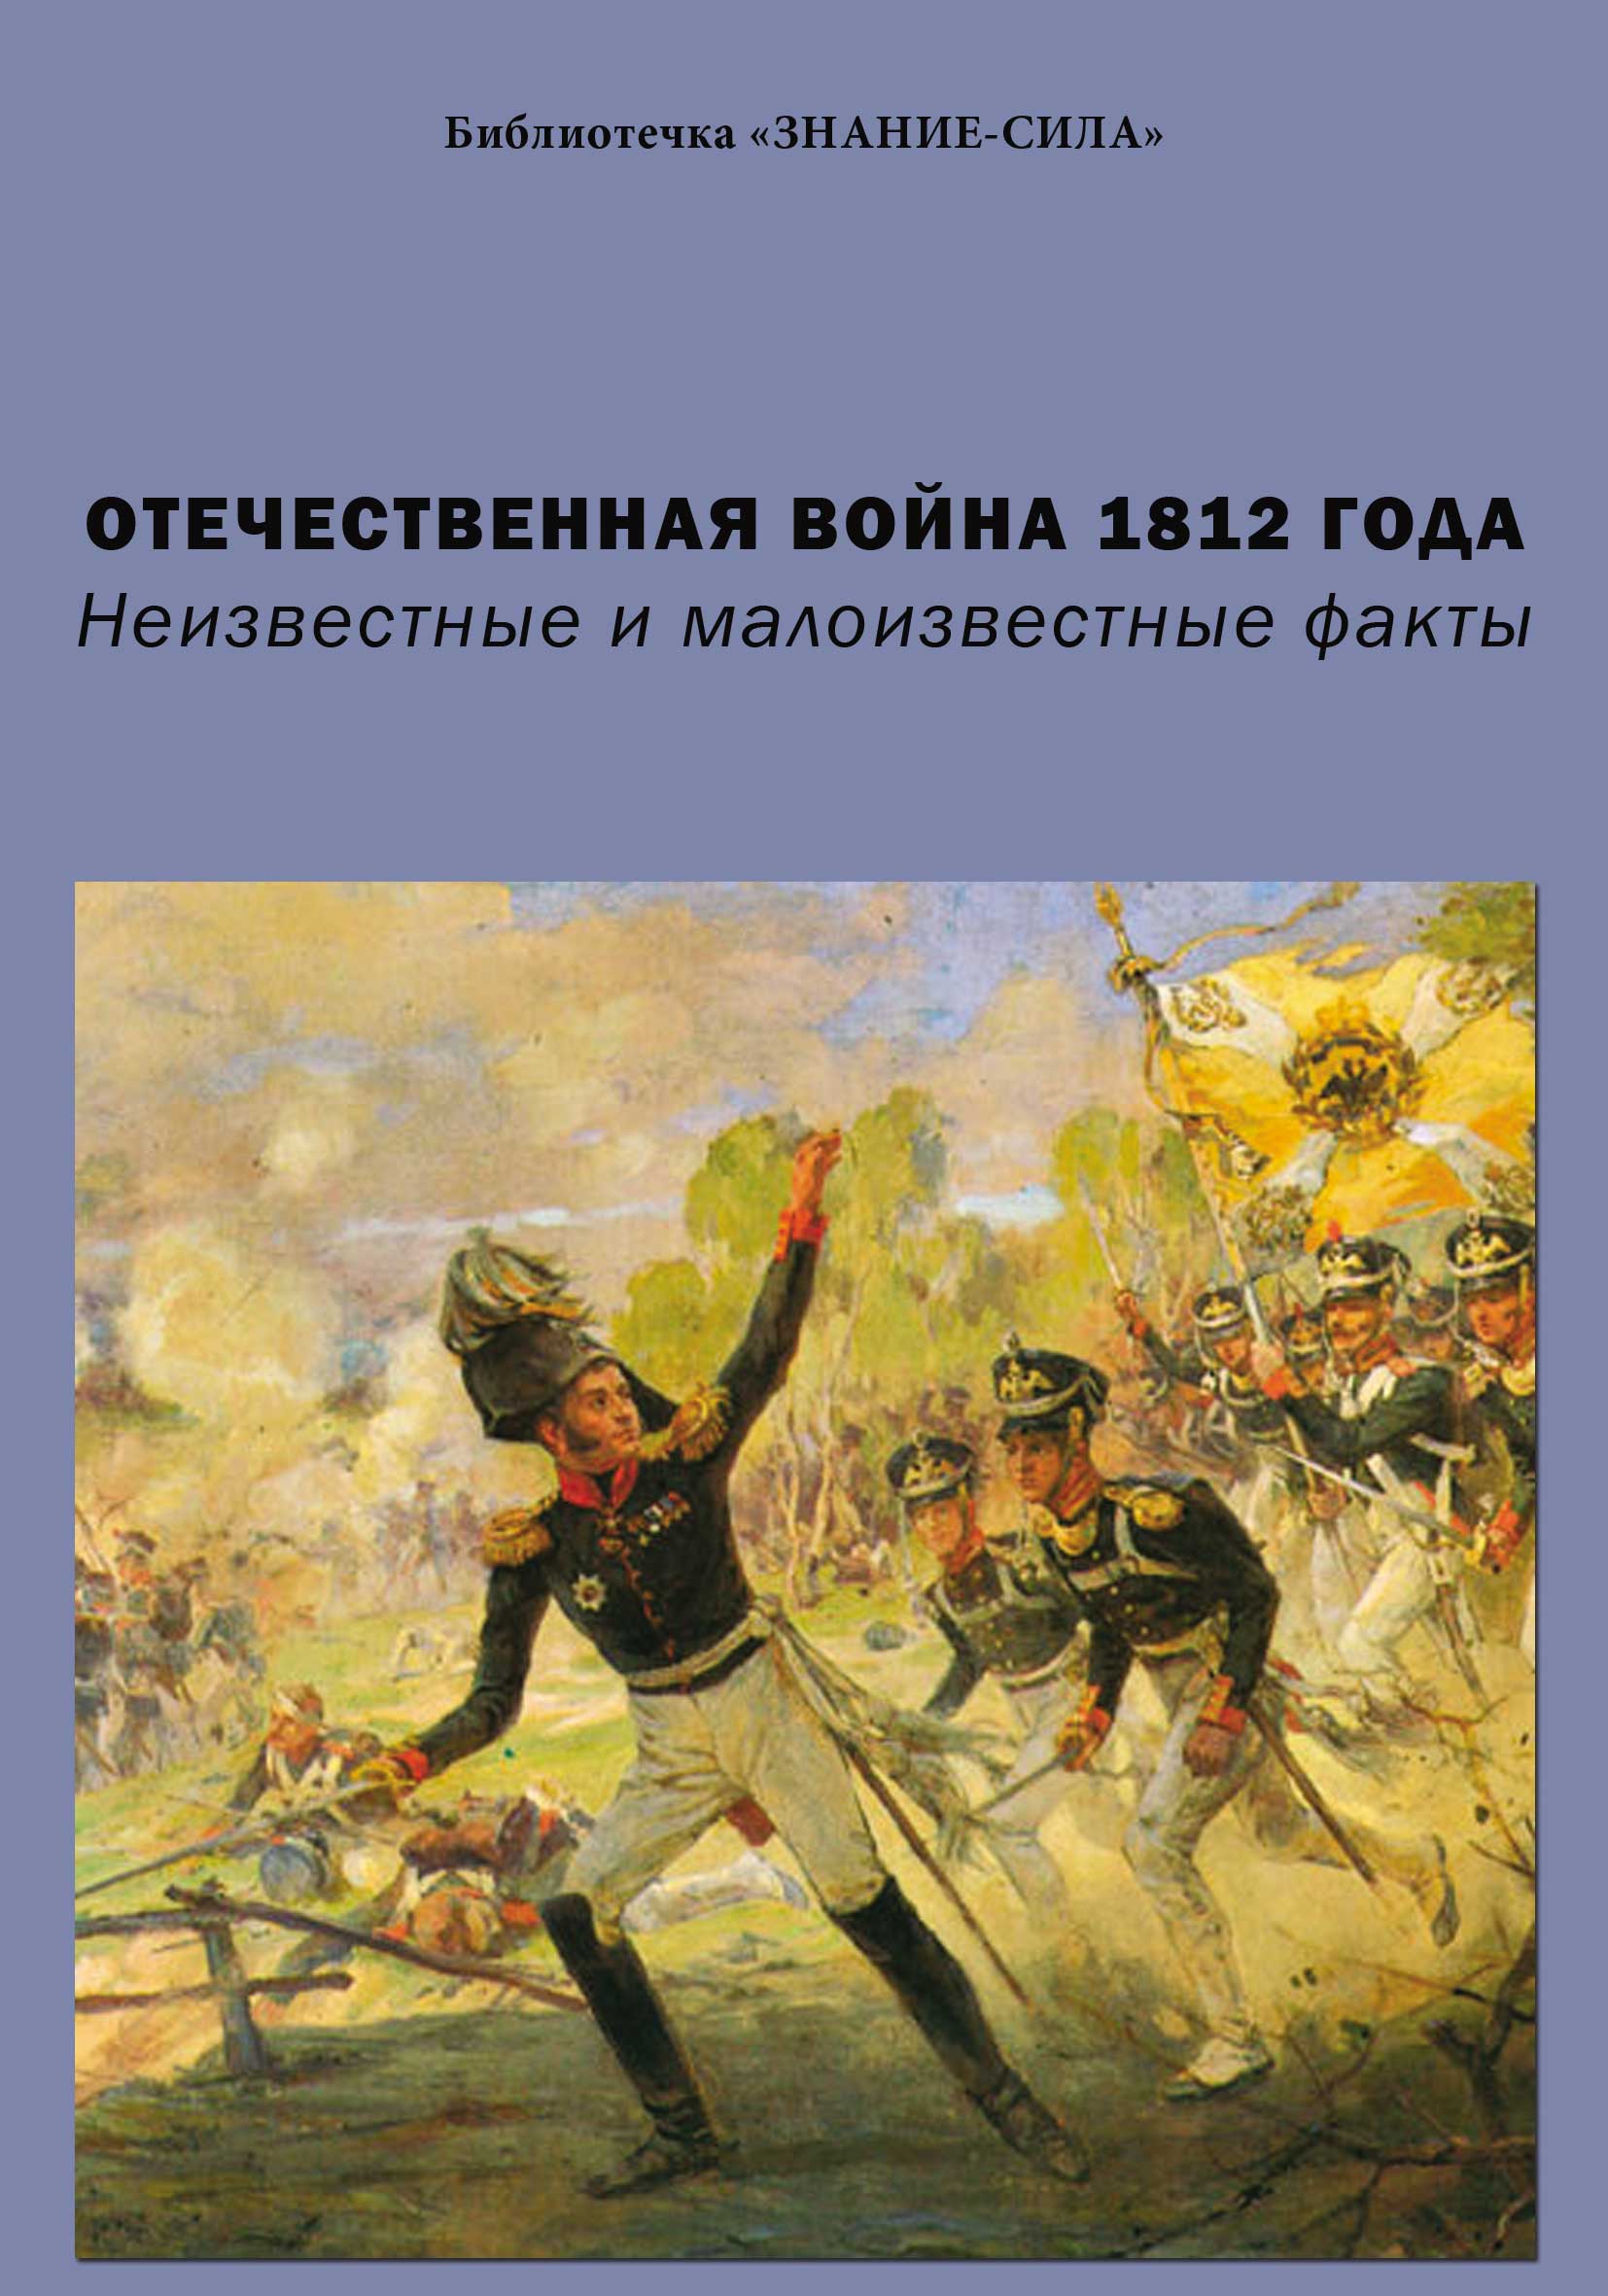 Книги о войне 1812 года скачать бесплатно